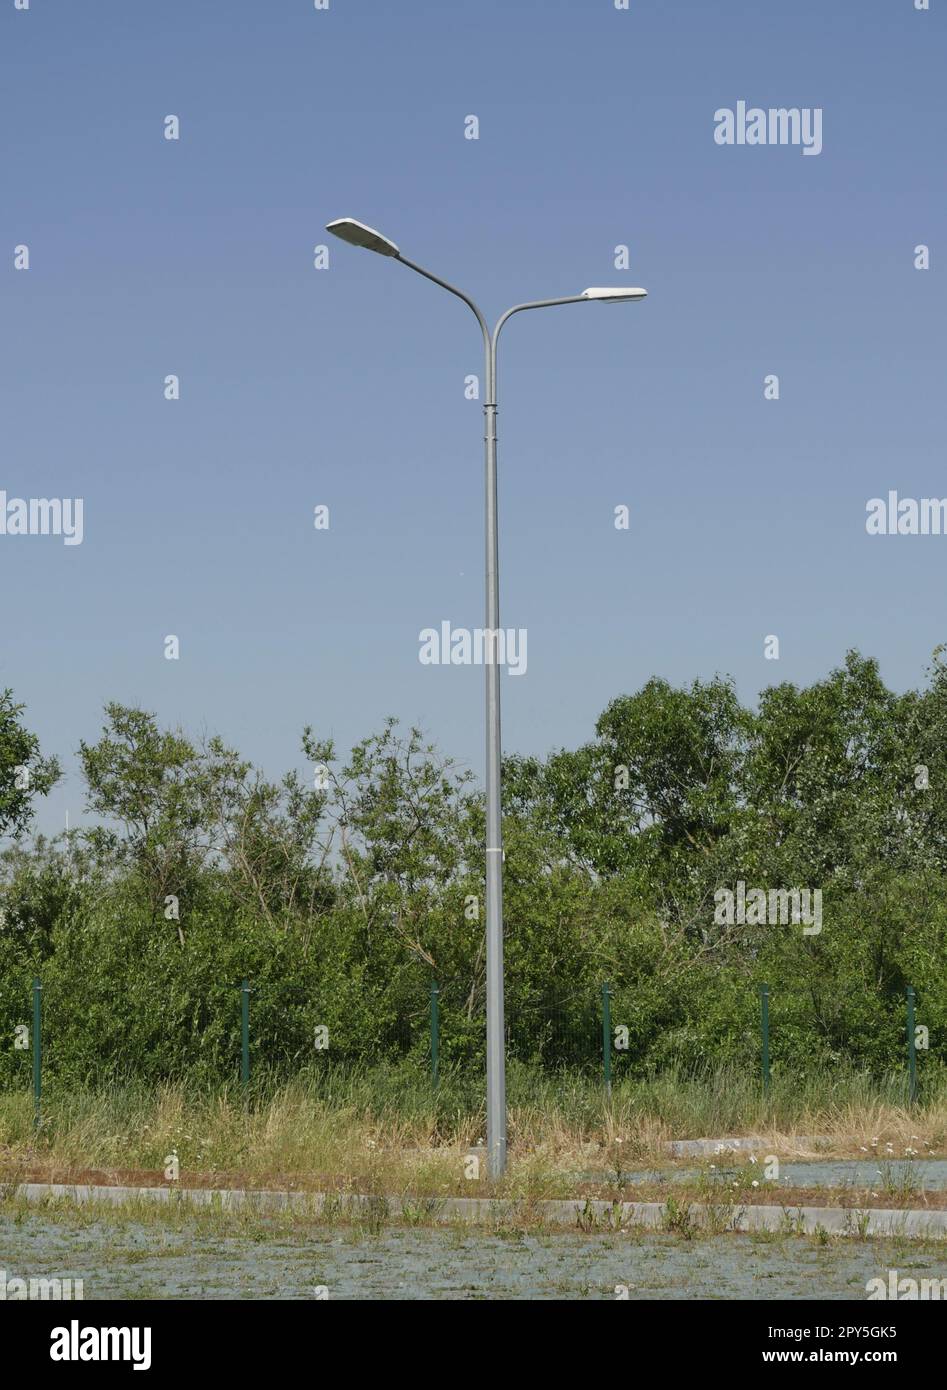 Ein Straßenmast mit zwei Laternen in der Natur Stockfoto